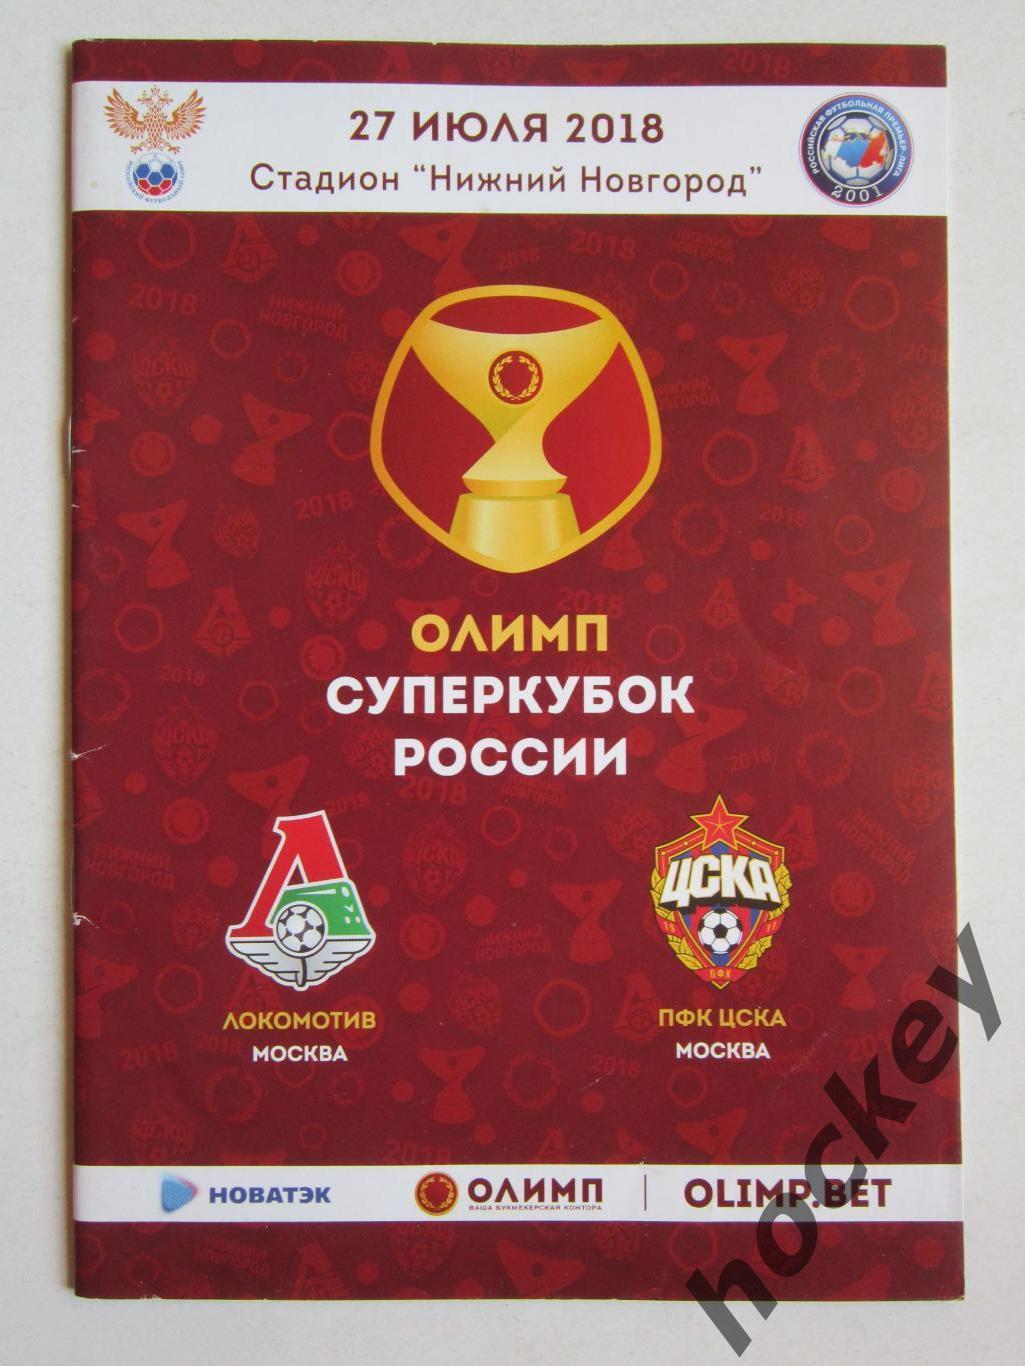 Локомотив Москва - ЦСКА Москва 27.08.2018. Суперкубок России